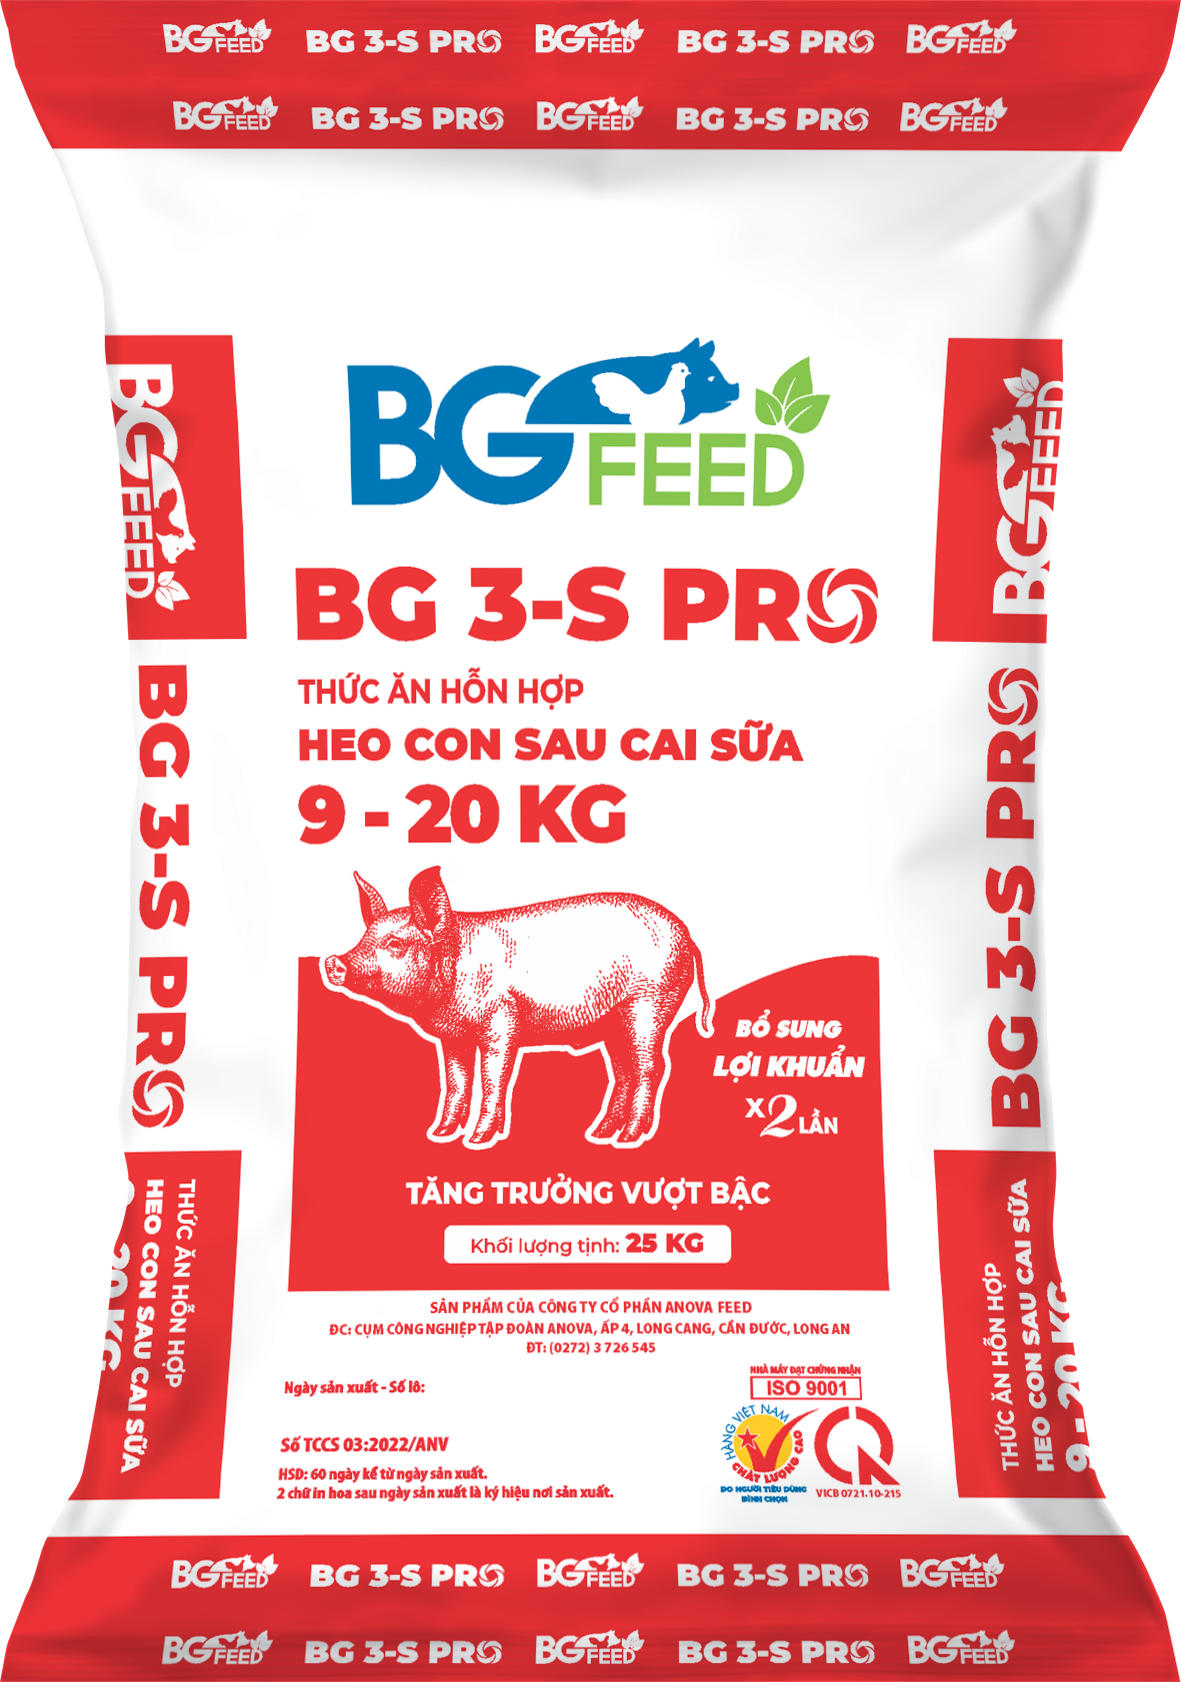 Thức ăn hỗn hợp cho HEO CON SAU CAI SỮA 9 - 20kg BG 3 - S PRO